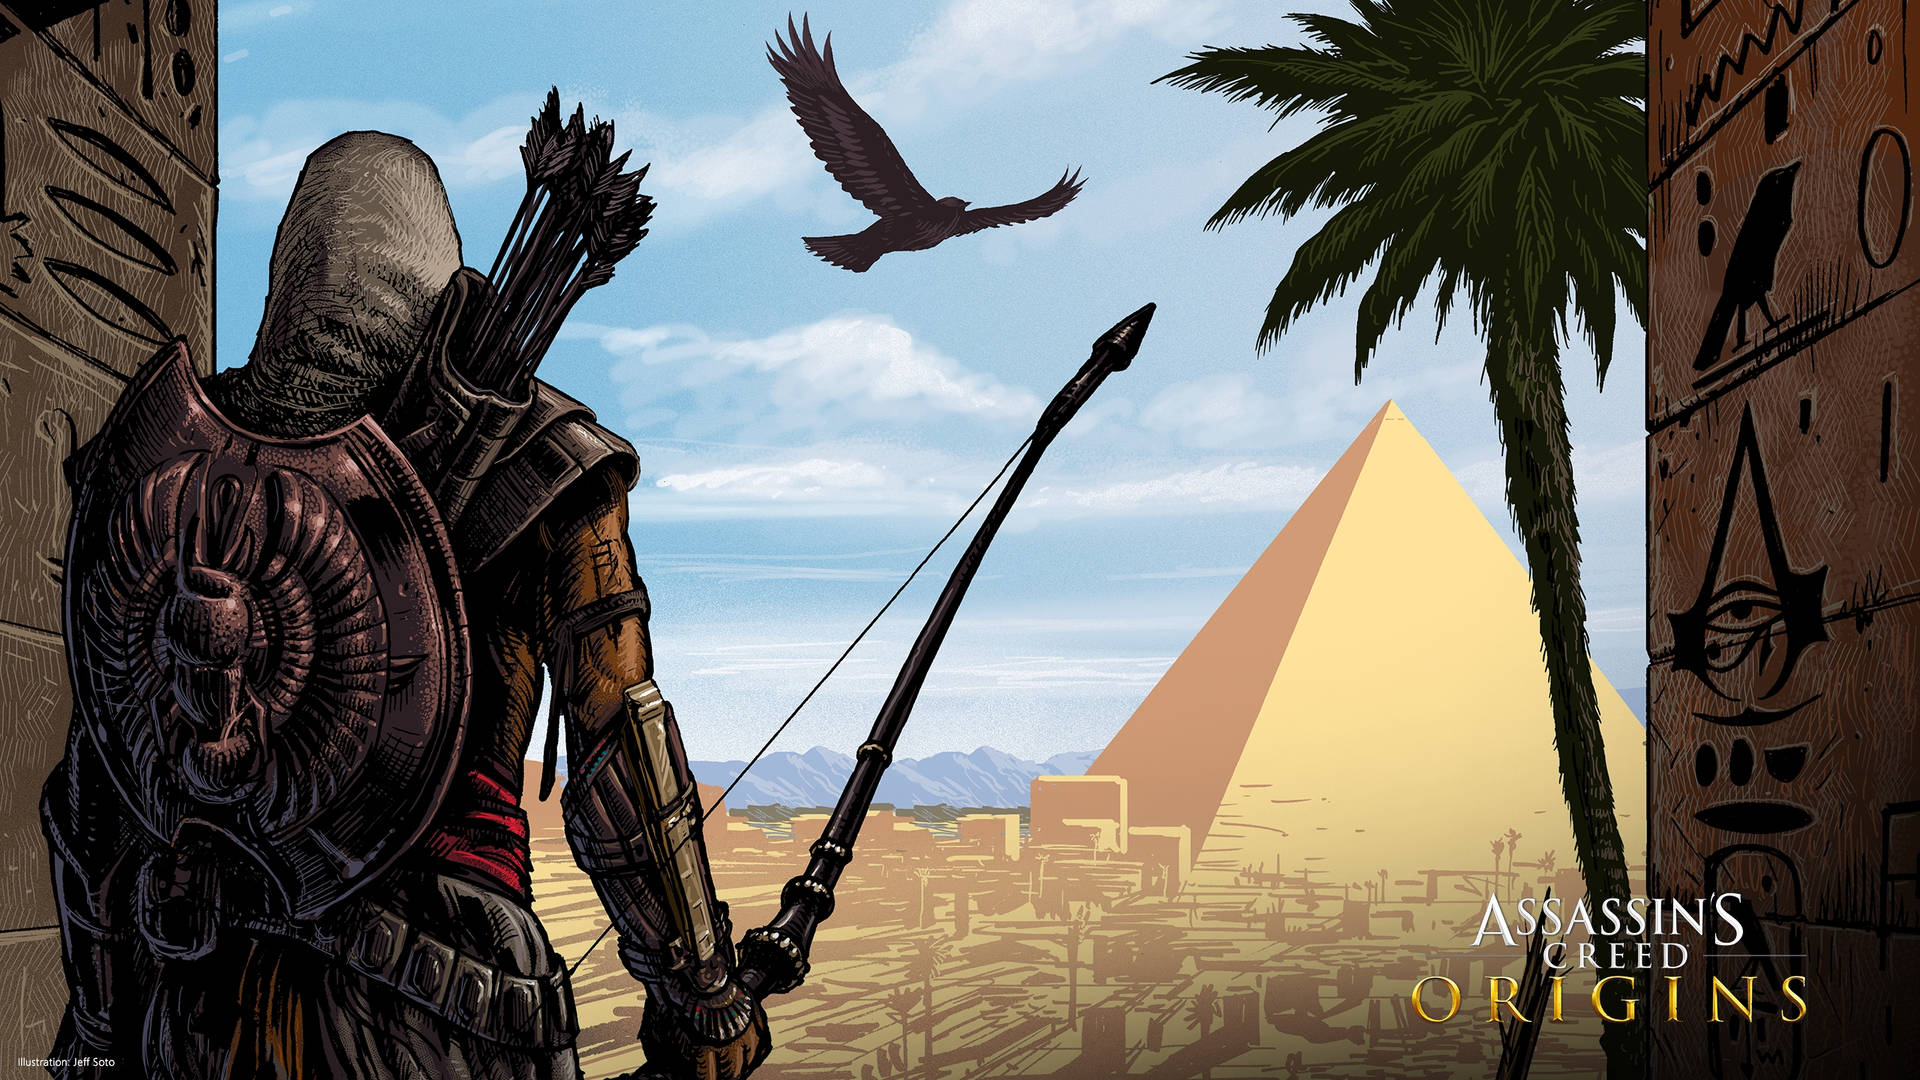 Assassins Creed Origins Bayek In The Desert Wallpaper